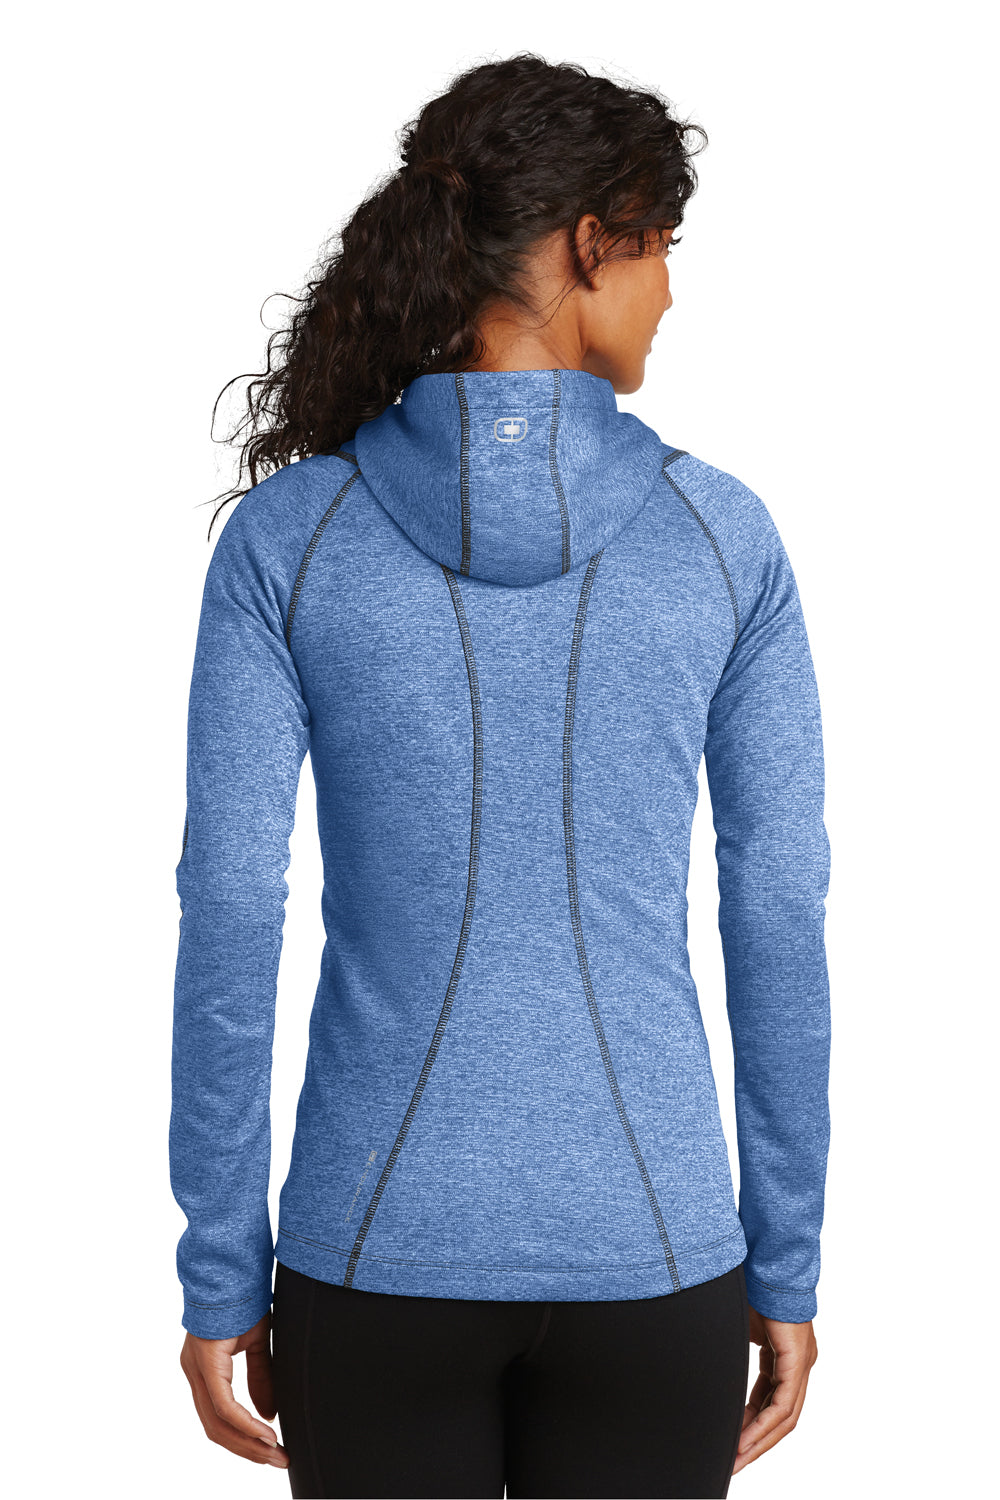 Ogio LOE501 Womens Endurance Pursuit Full Zip Hooded Sweatshirt Hoodie Electric Blue Back